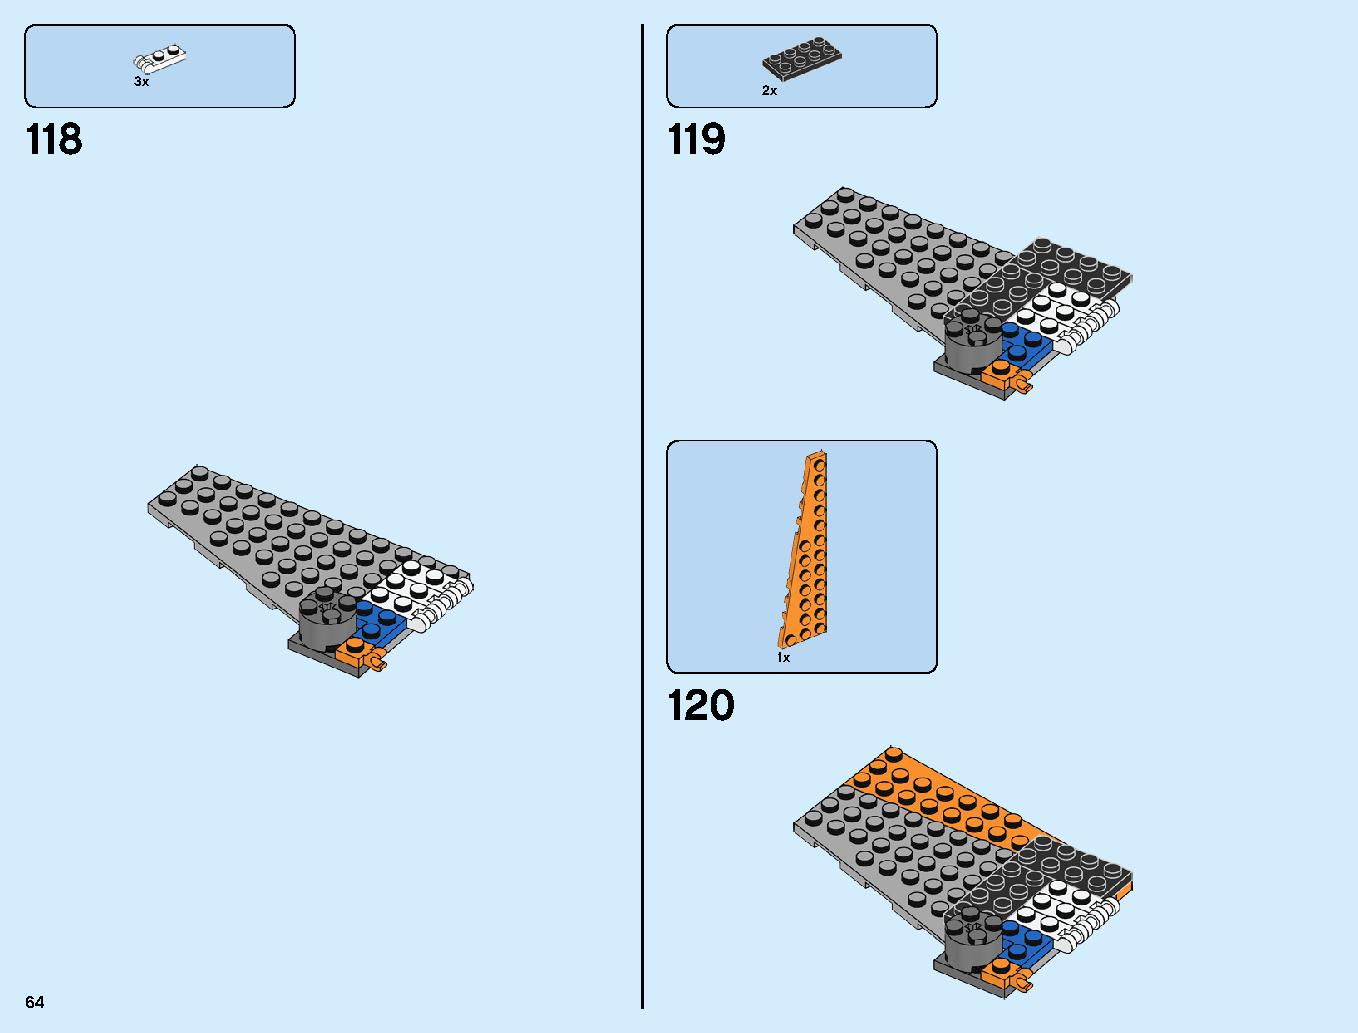 어벤져스 타노스: 최후의 전투 76107 레고 세트 제품정보 레고 조립설명서 64 page